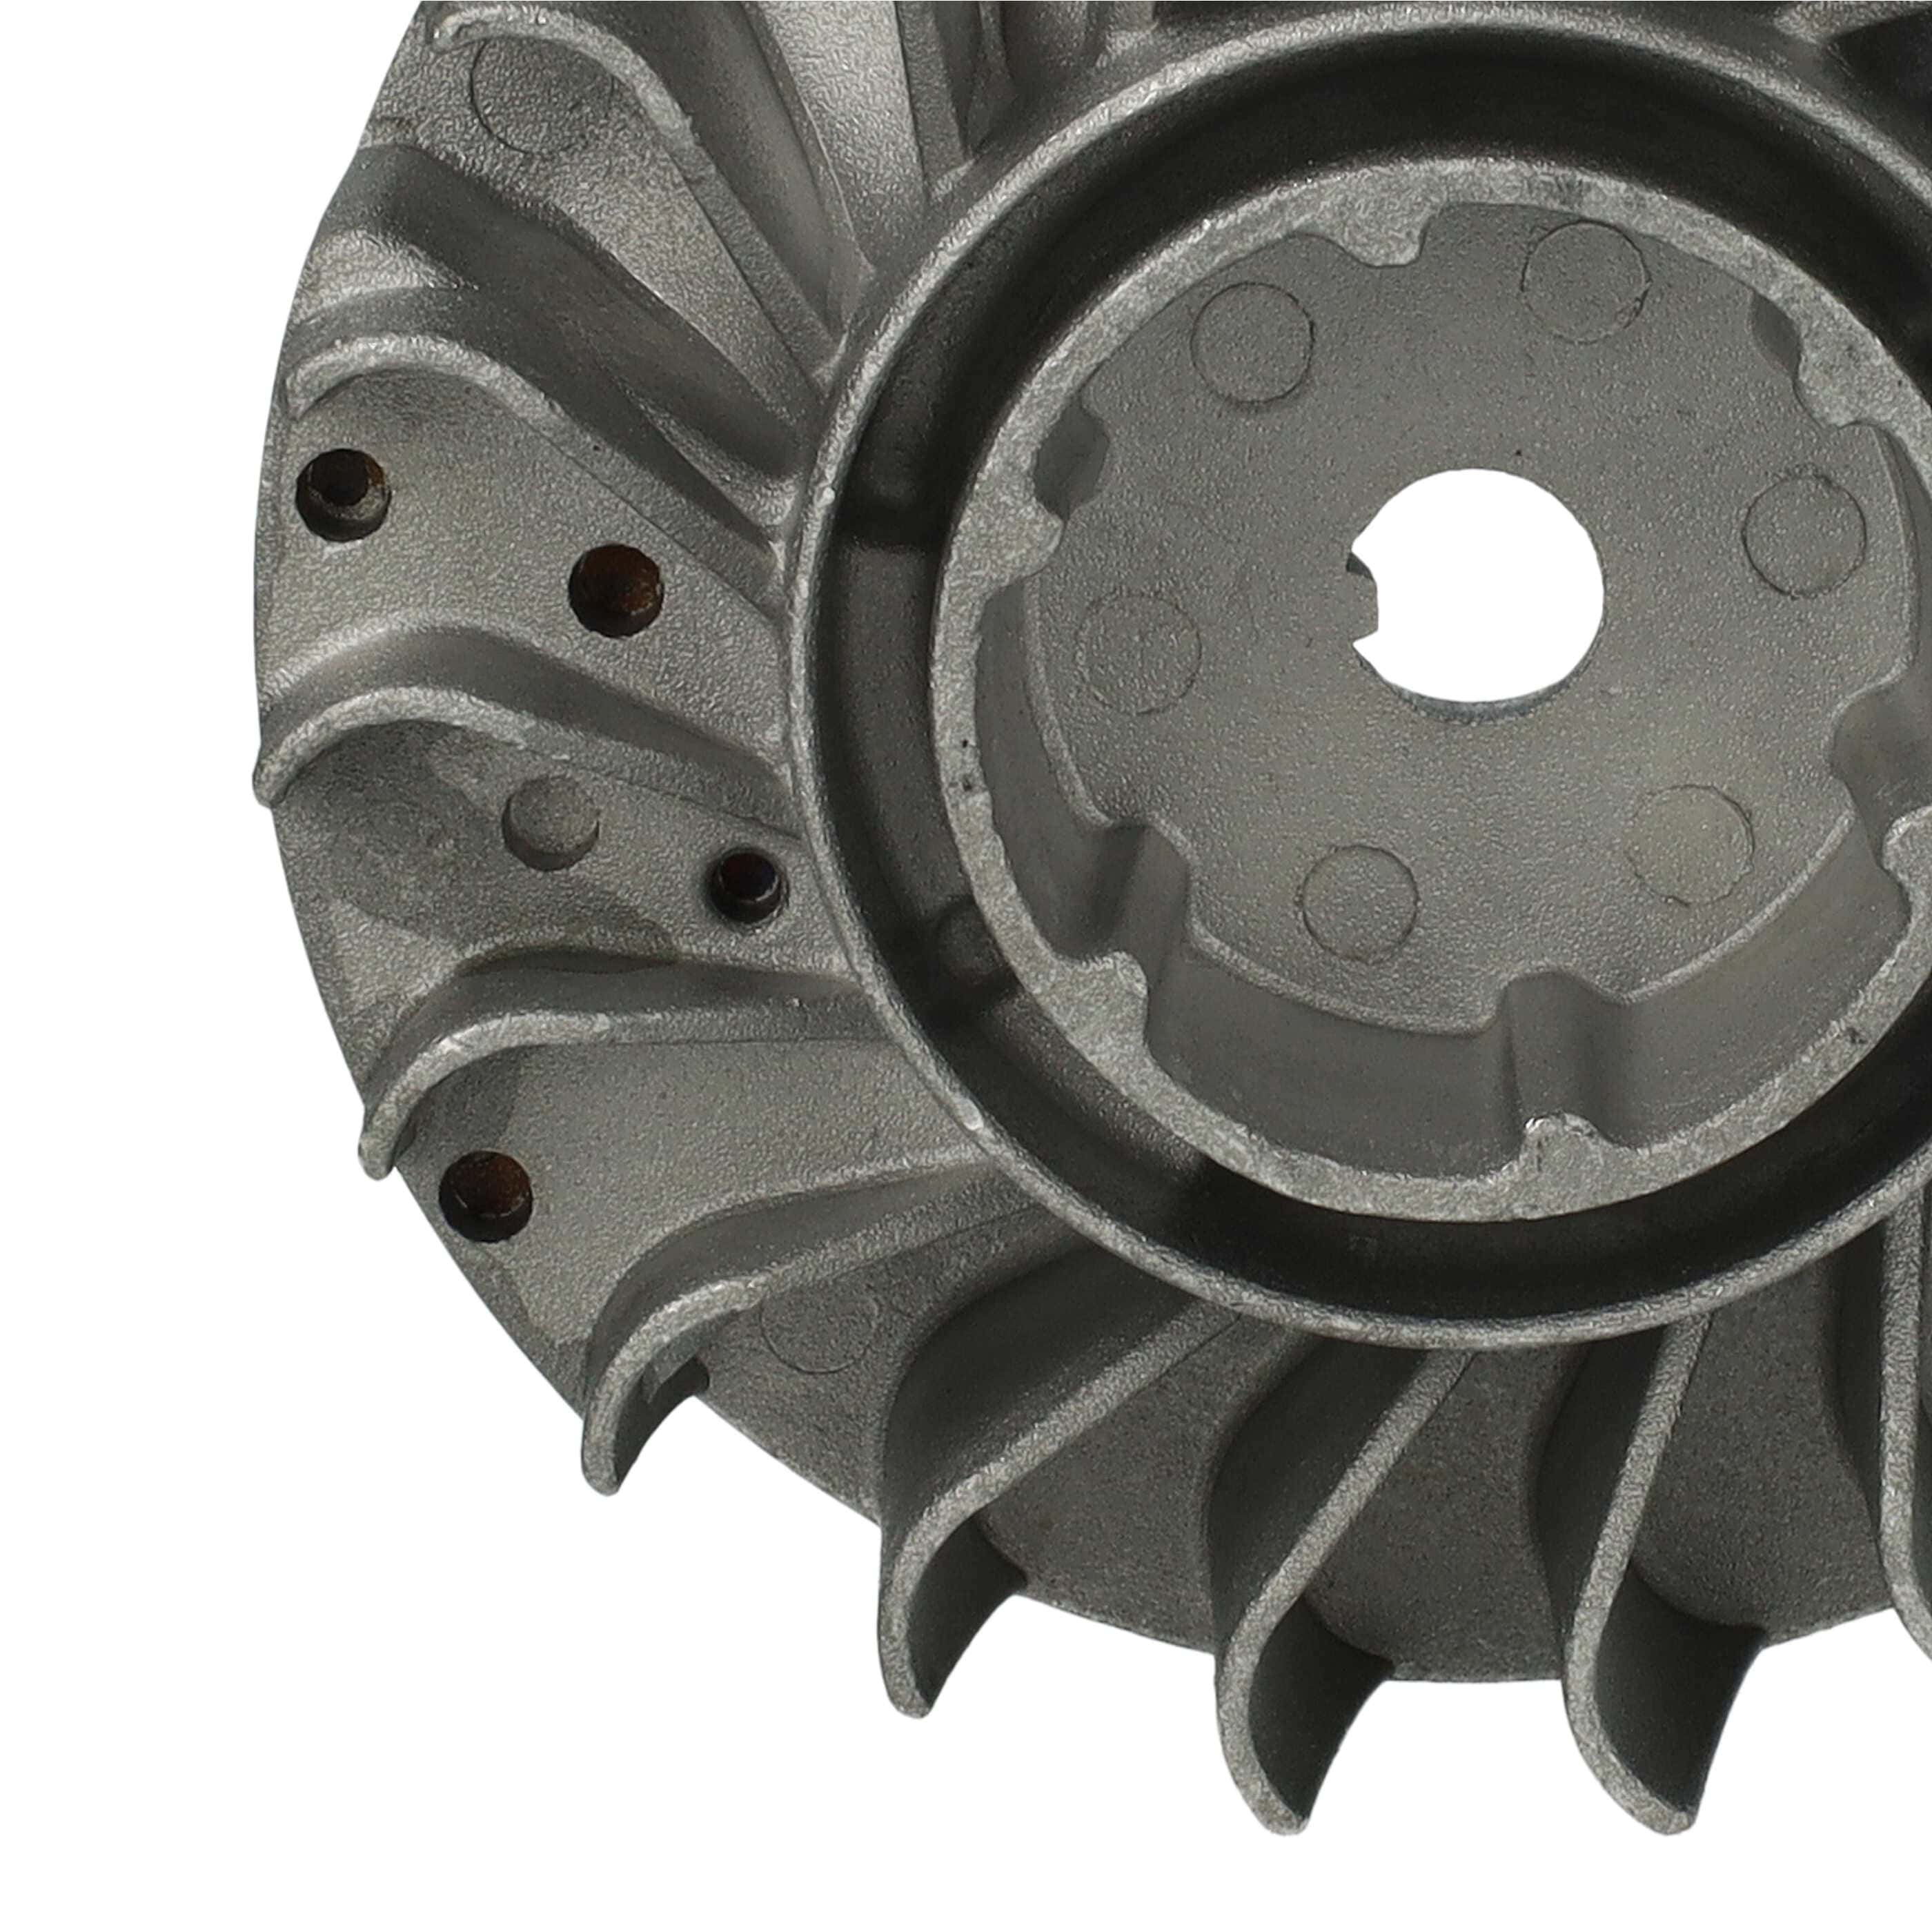 Flywheel, Fan Wheel, Fan Impeller as Replacement for Stihl 1143 400 1234, 1143 400 1201 - Flywheel, Fan Wheel 